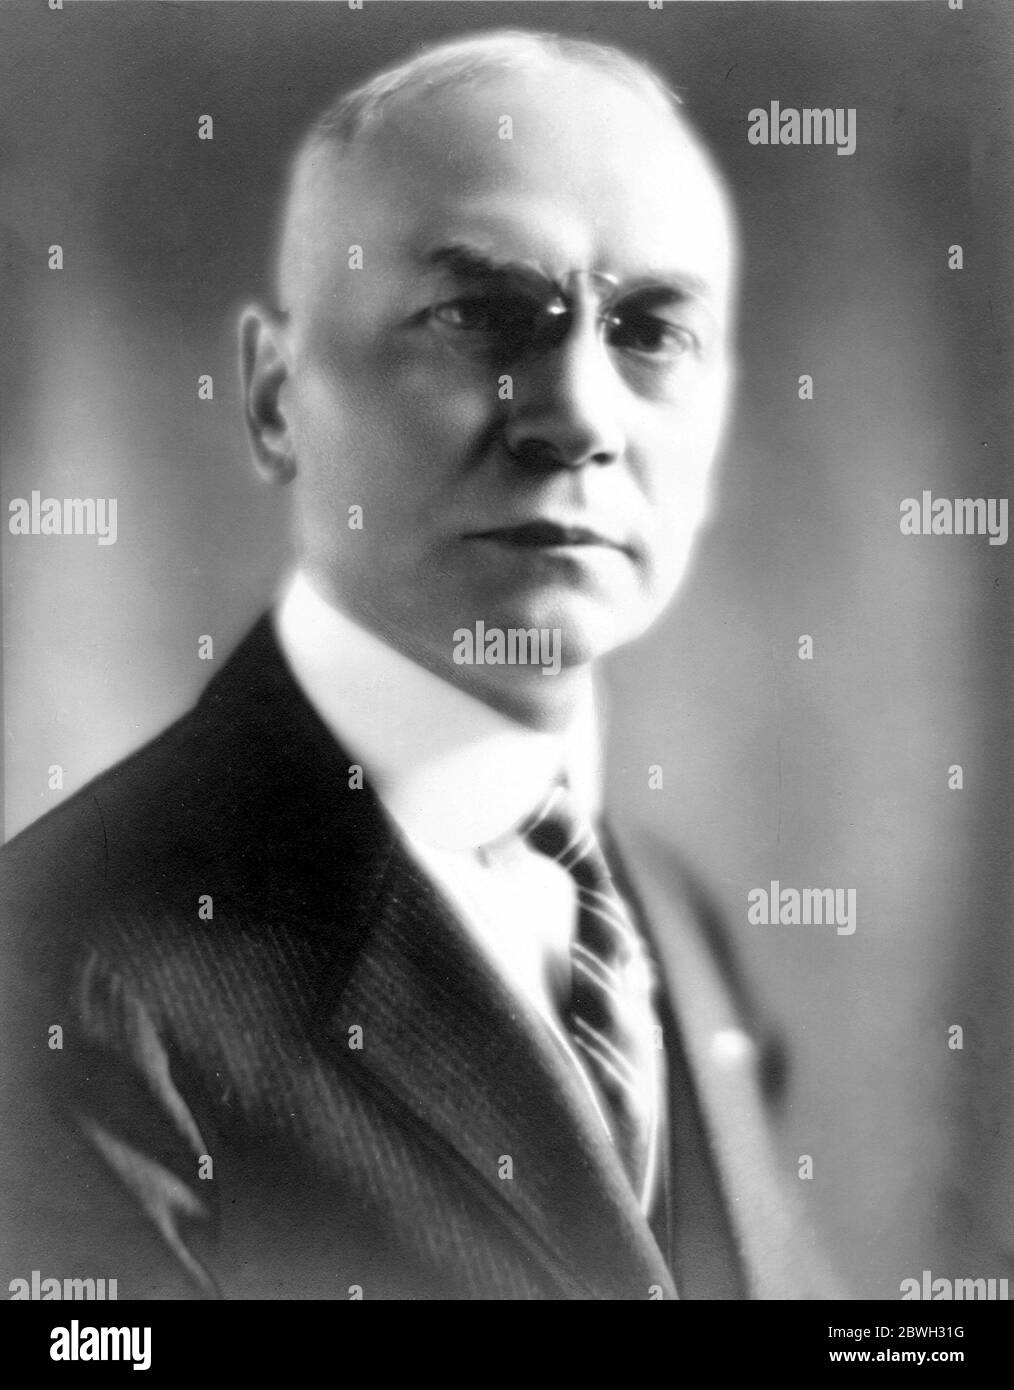 William Elvis Sloan I (1867 – 1961) Erfinder des Flusshometer-Spülmechanismus für Toiletten und Urinale.] Stockfoto